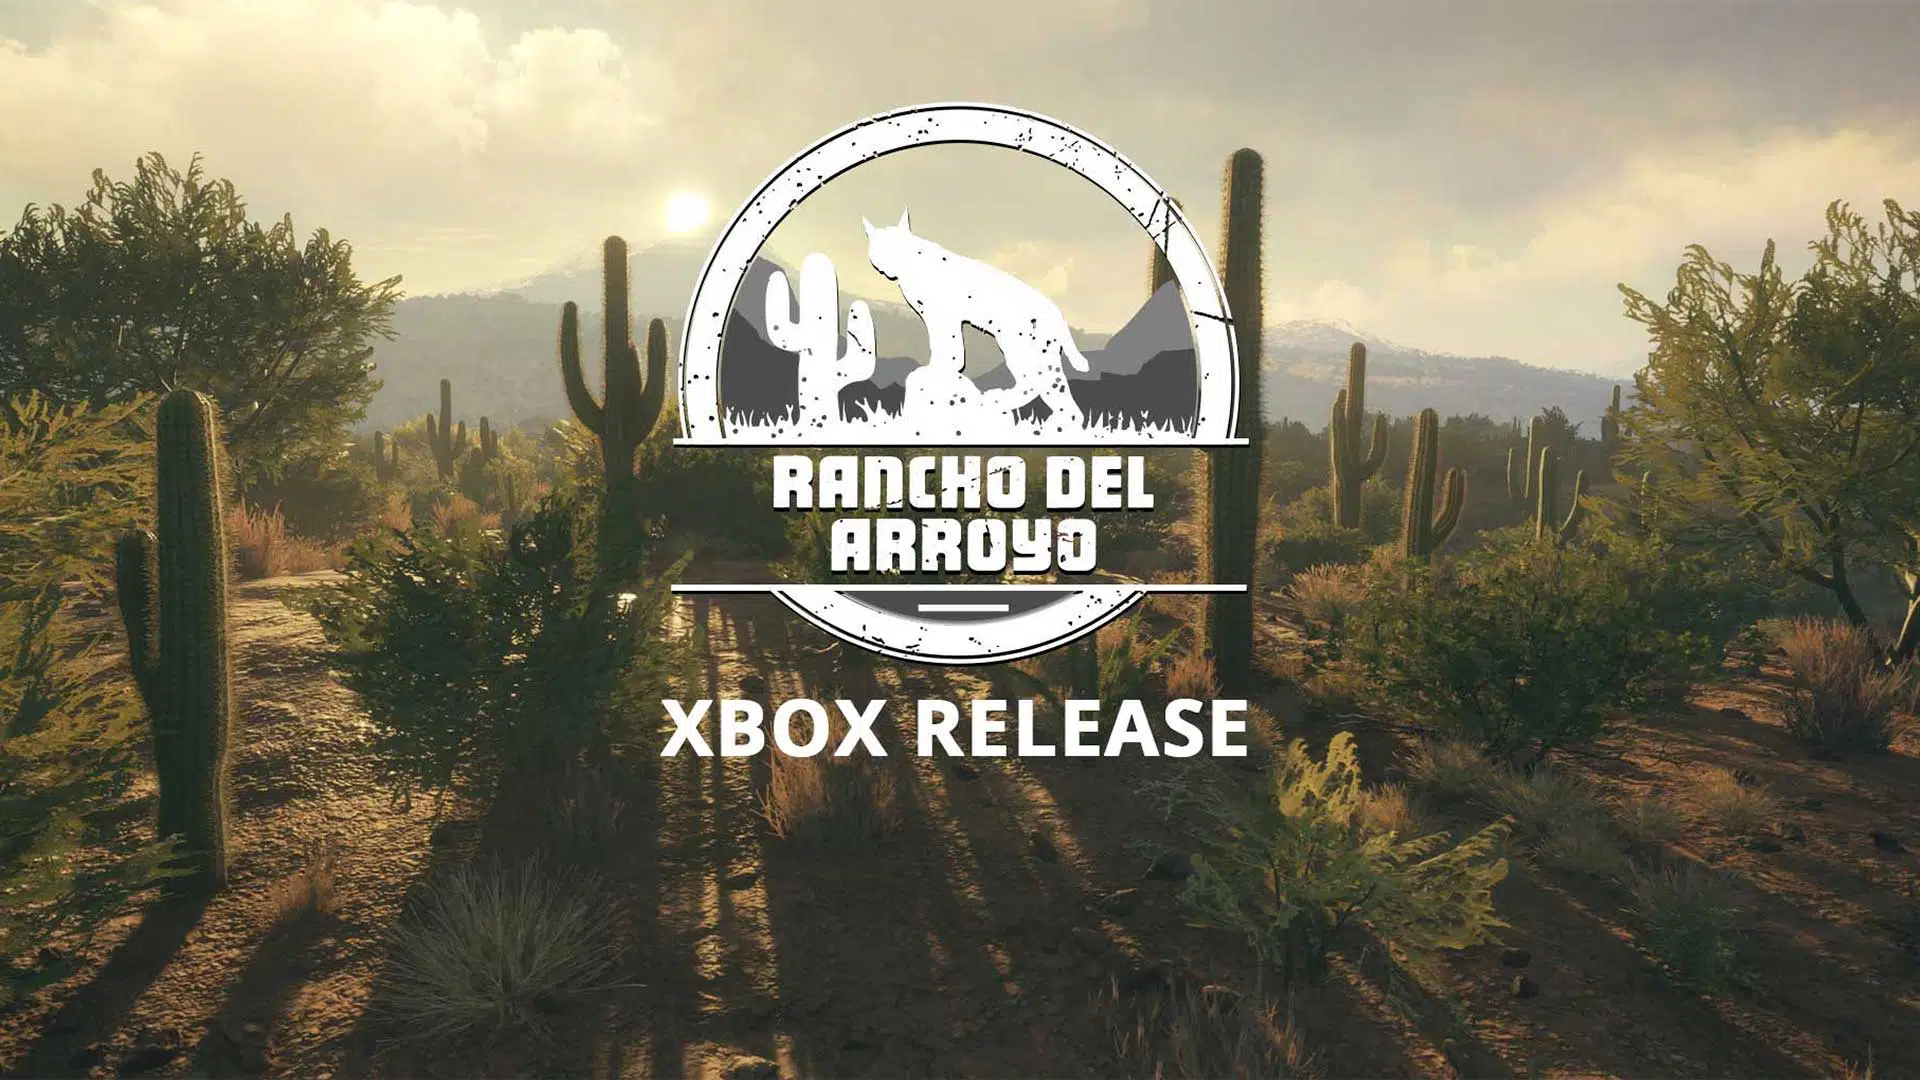 cotw RanchodelArroyo xbox release date